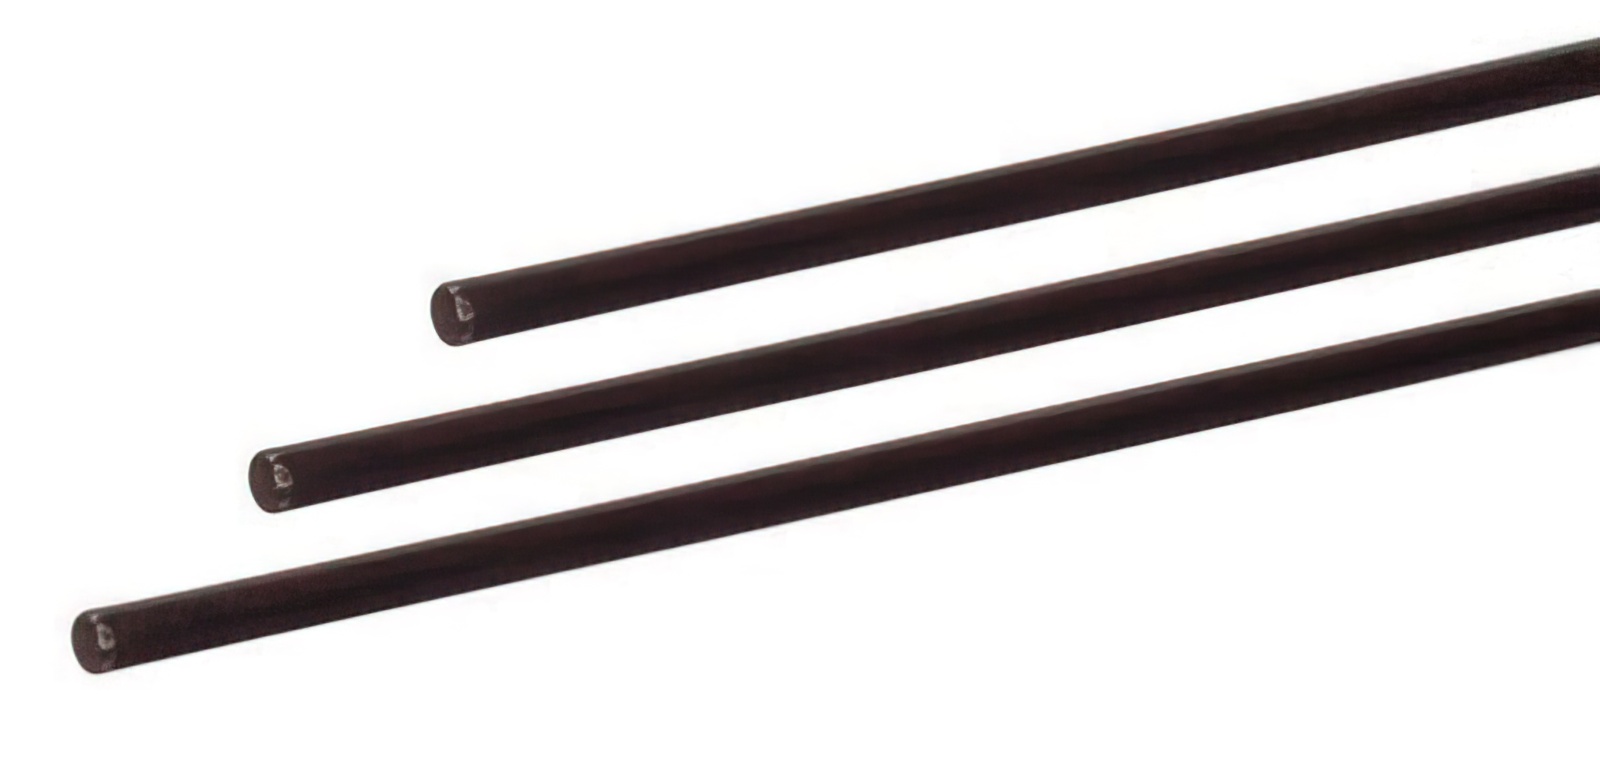 2 Stück - Gfk-Vollstab (Fiberglasstab/Glasfaserstab) 6  mm 100 cm schwarz für Drachen- und Modellbau Basteln Montagen Messebau Industrie Haushalt